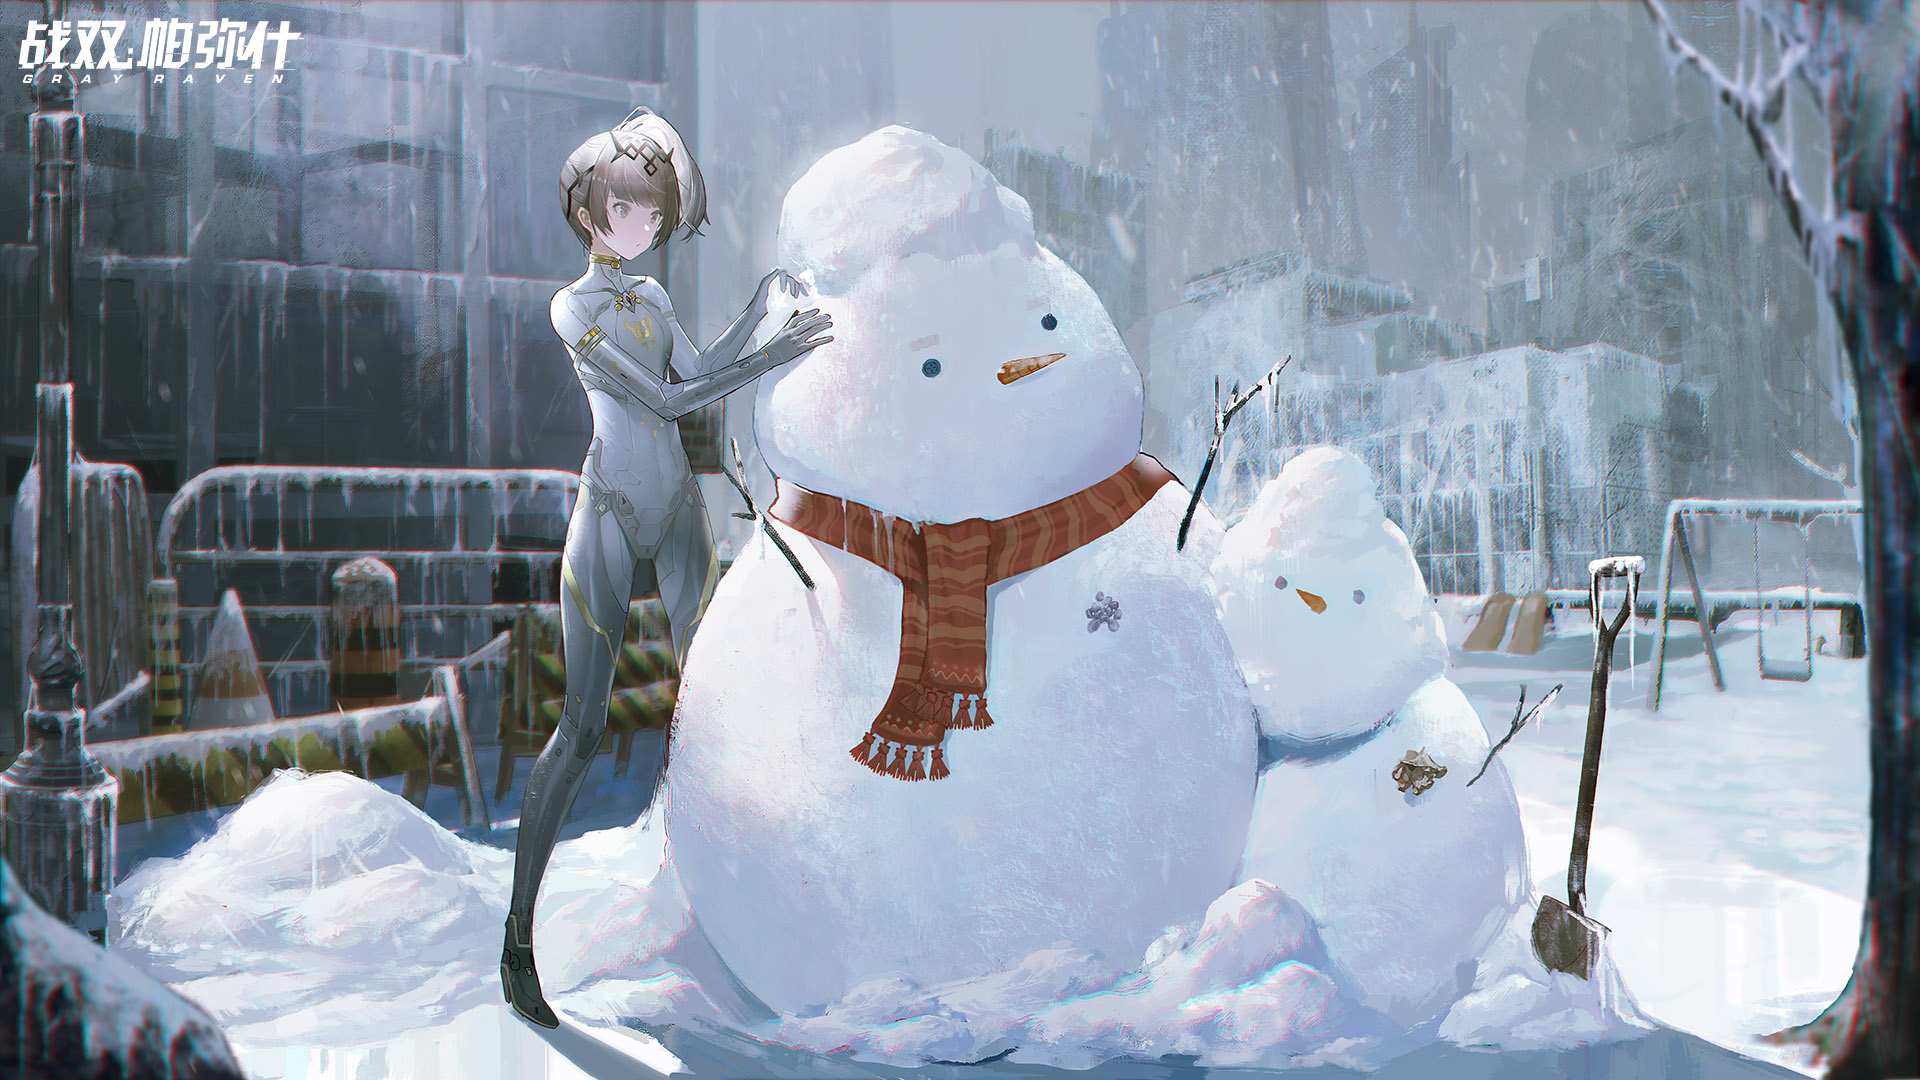 Girl and Snow Anime Wallpaper - Izinhlelo zokusebenza ku-Google Play